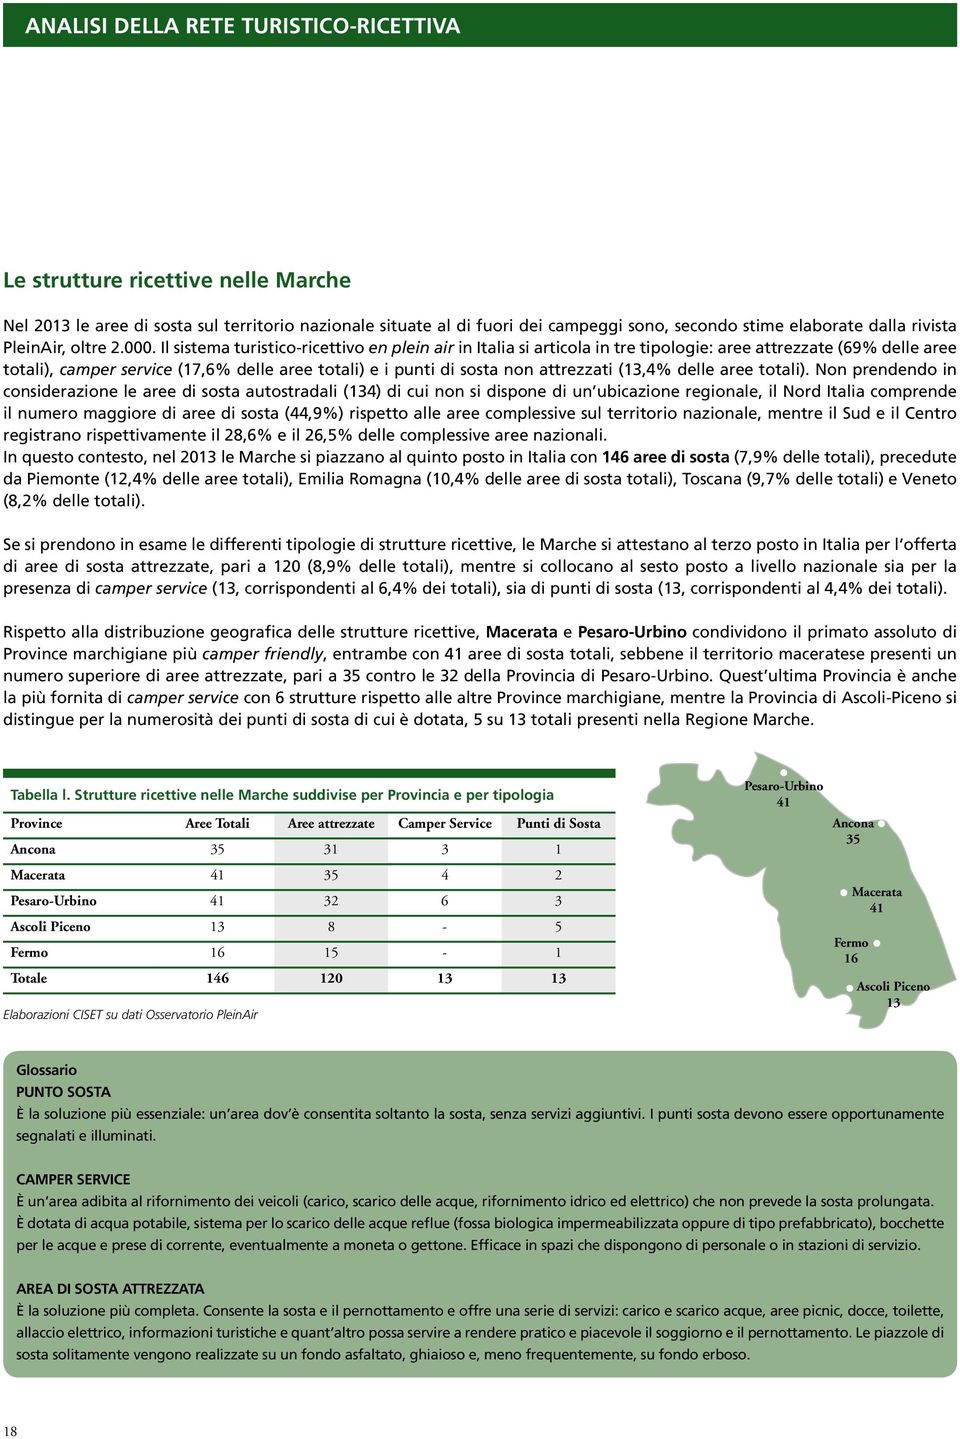 Il sistema turistico-ricettivo en plein air in Italia si articola in tre tipologie: aree attrezzate (69% delle aree totali), camper service (17,6% delle aree totali) e i punti di sosta non attrezzati